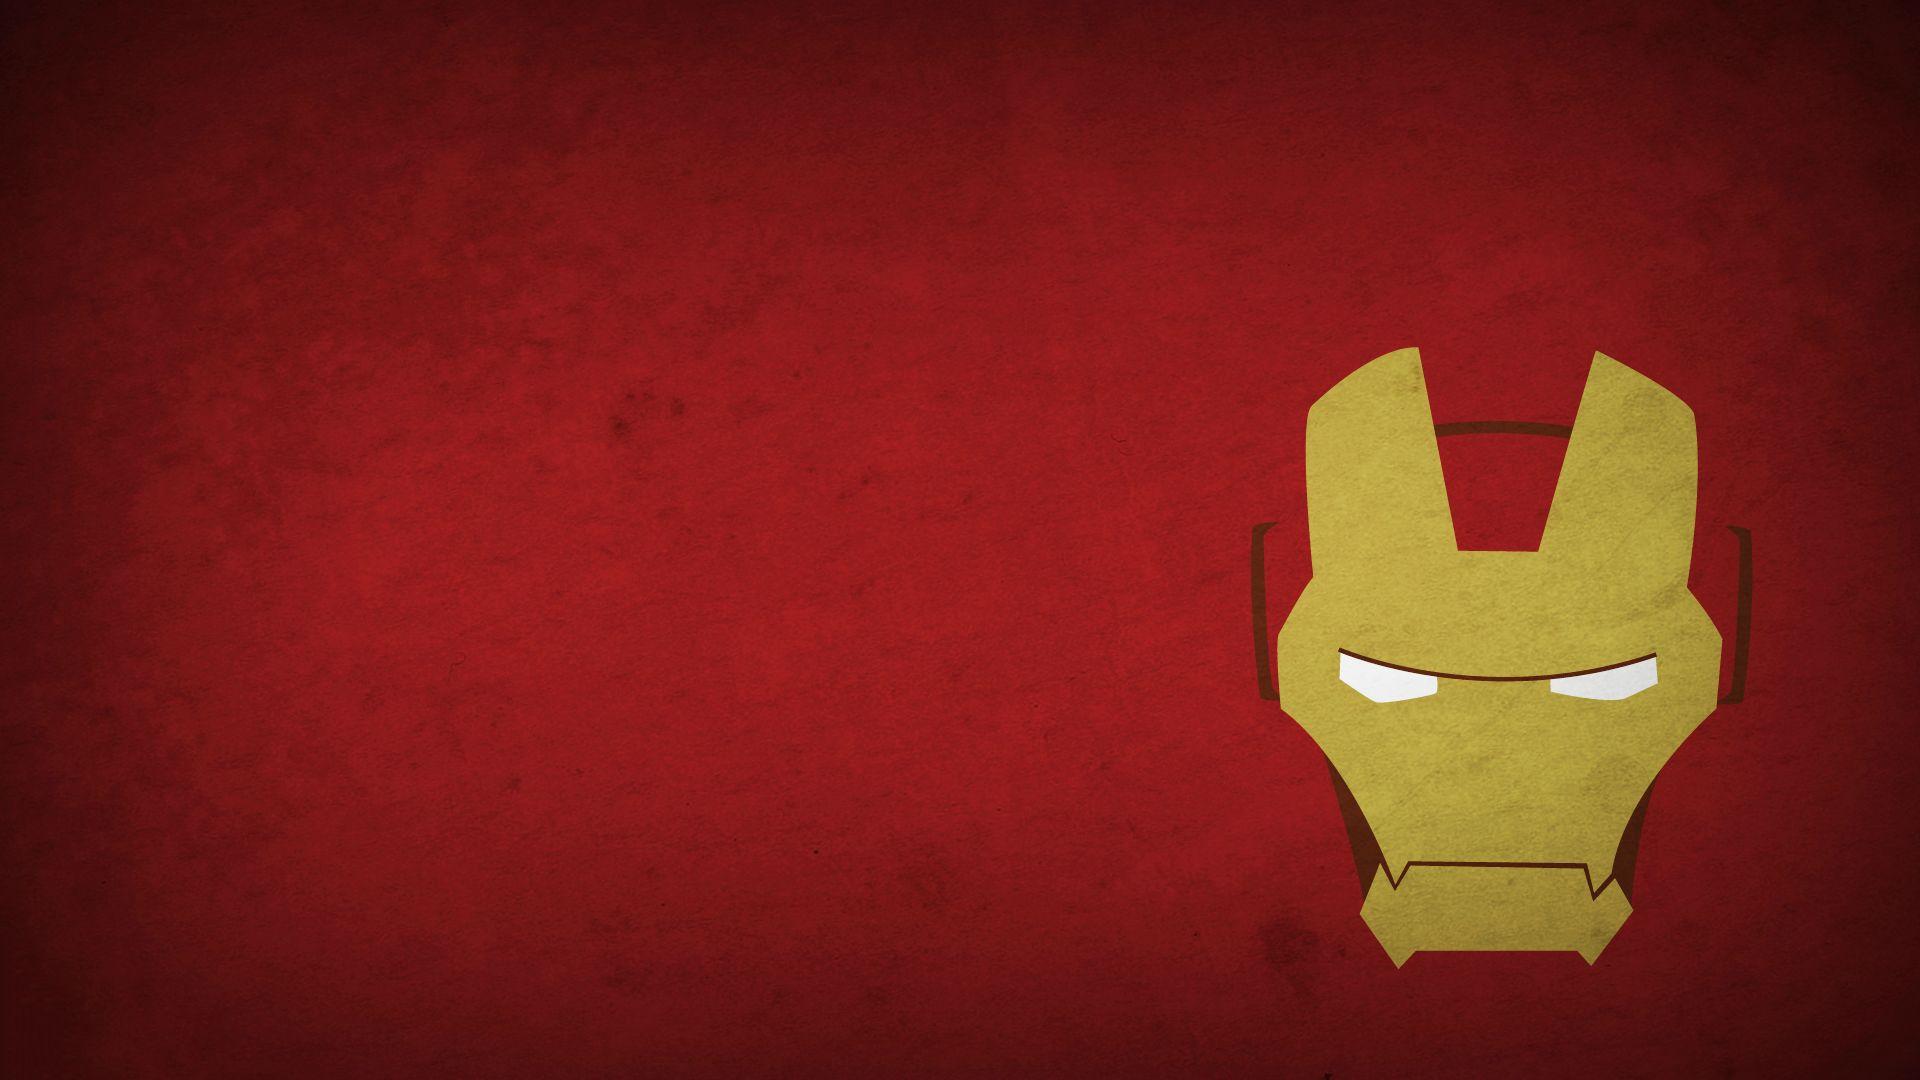 Beautiful Iron Man Logo Wallpaper Widescreen